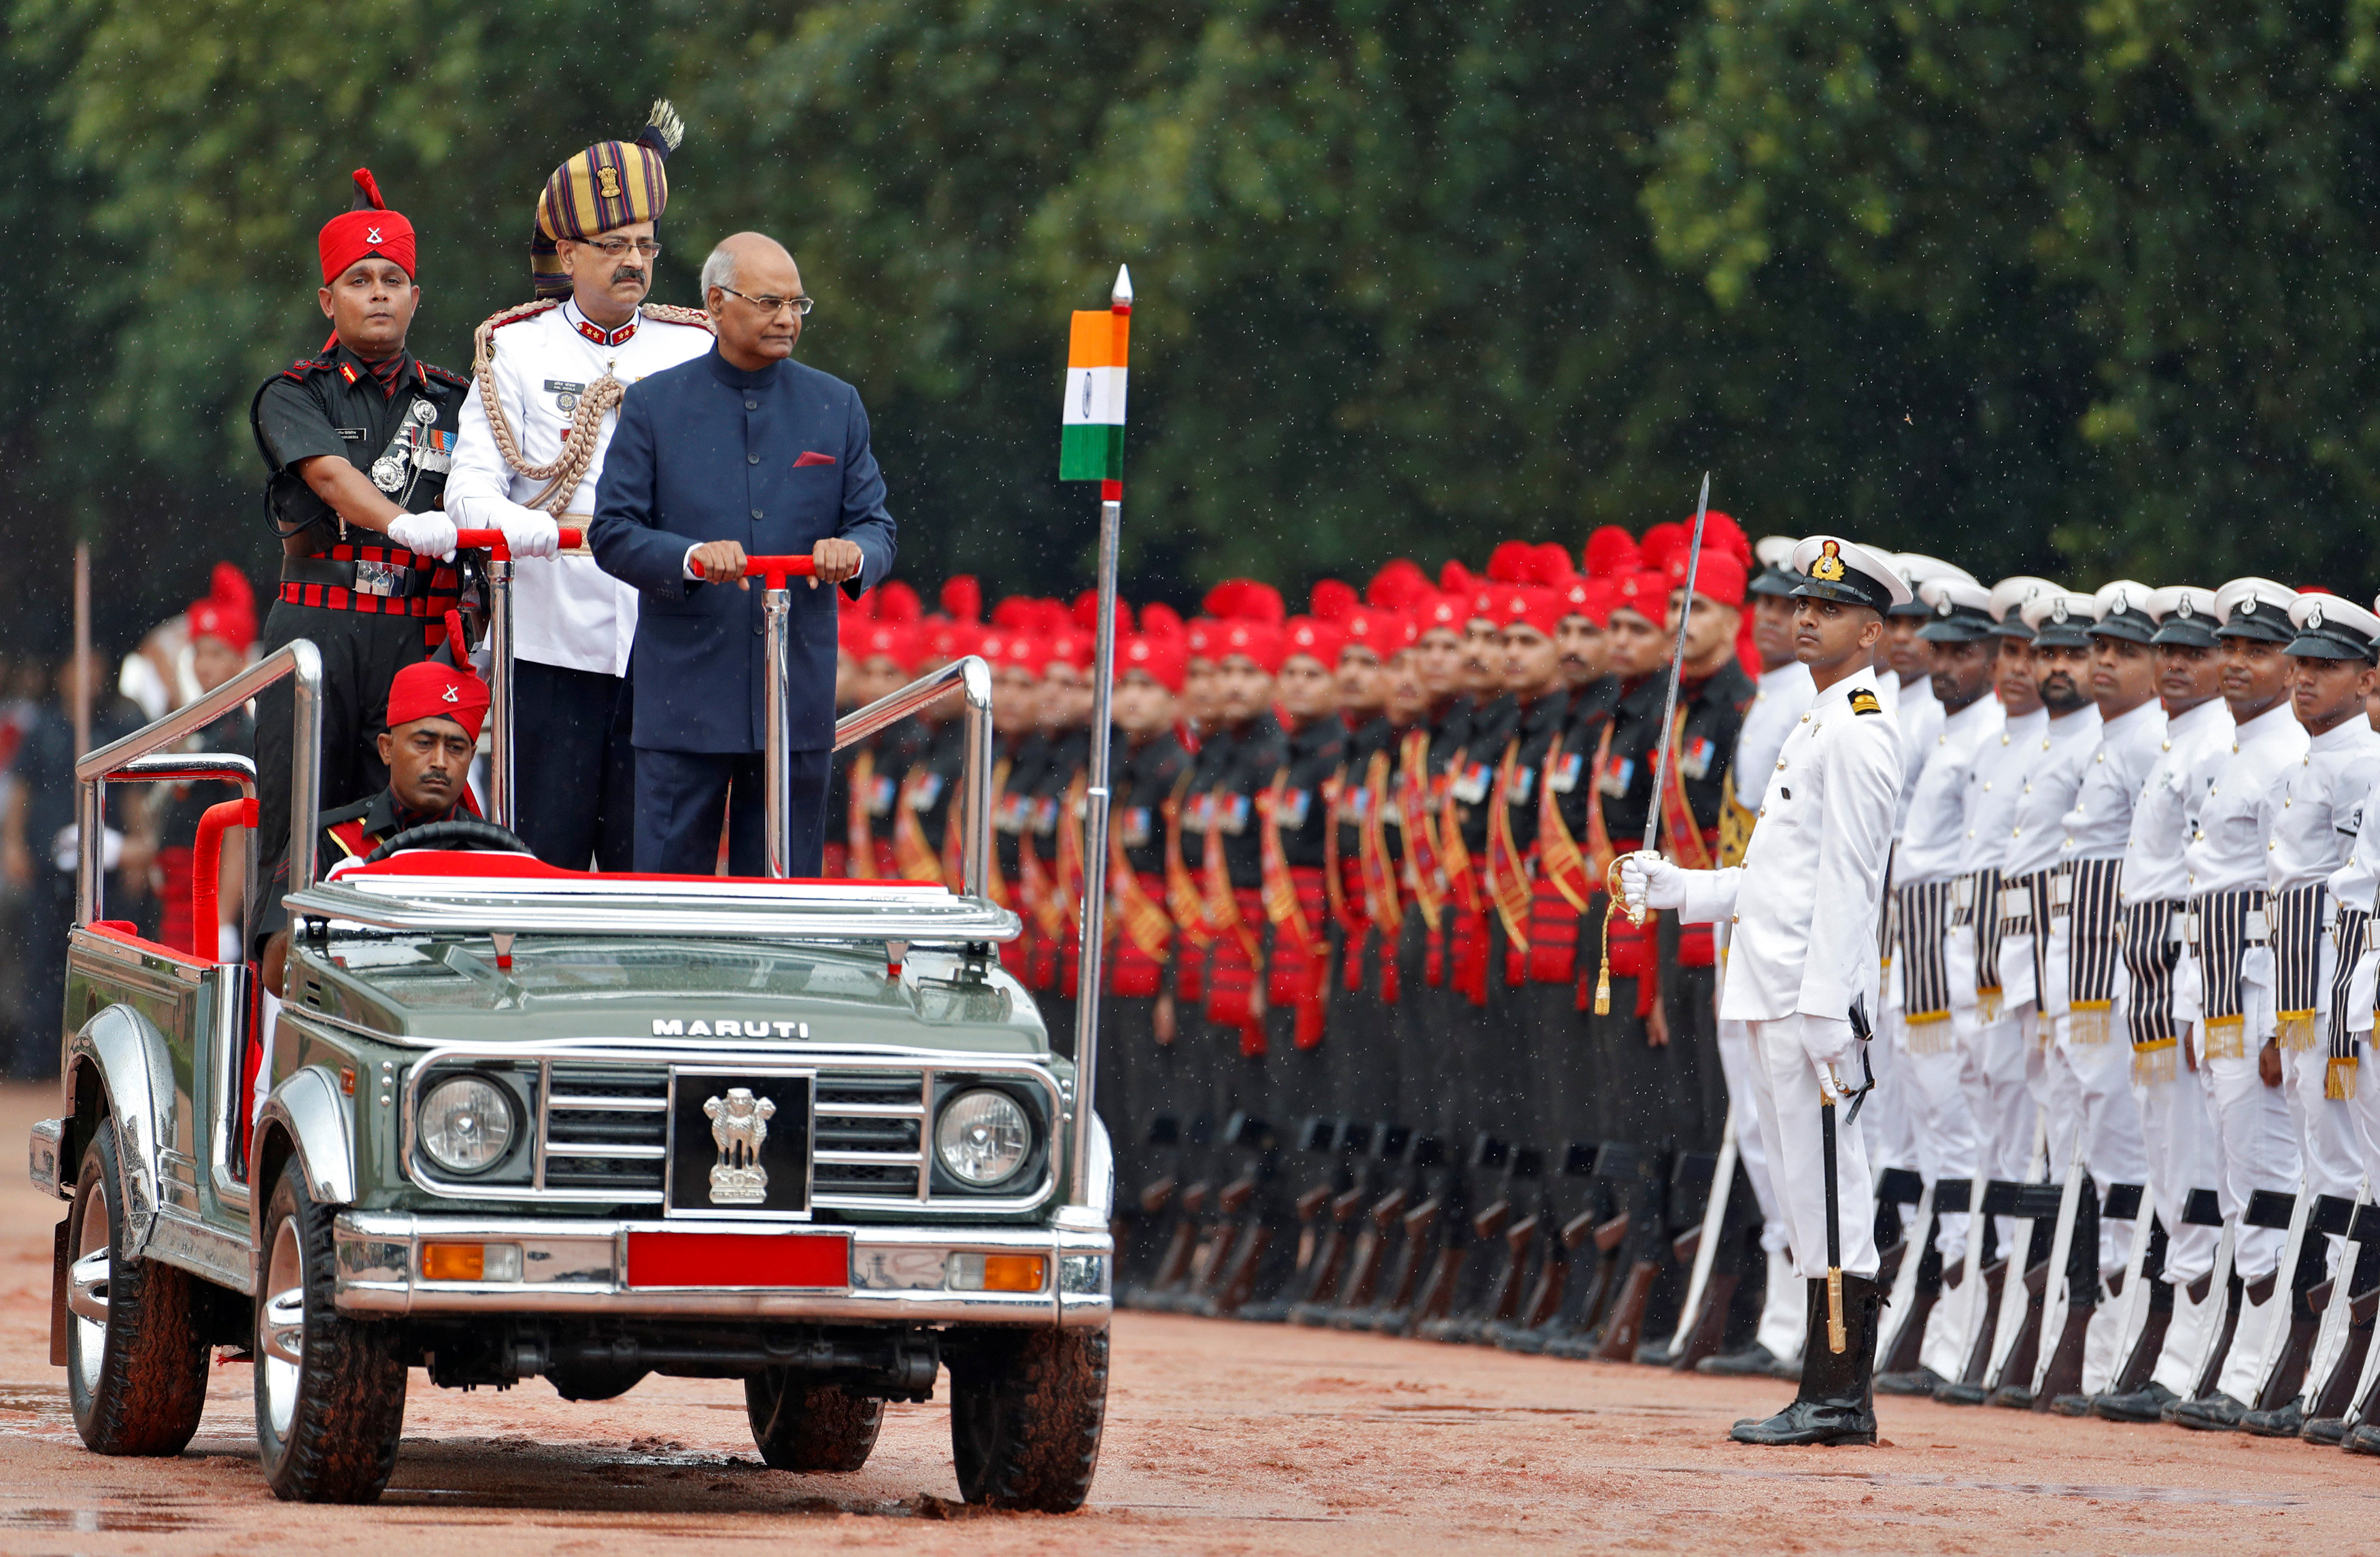 الرئيس الهندى الجديد رام نات كوفيند يؤدى اليمين رئيسا للبلاد